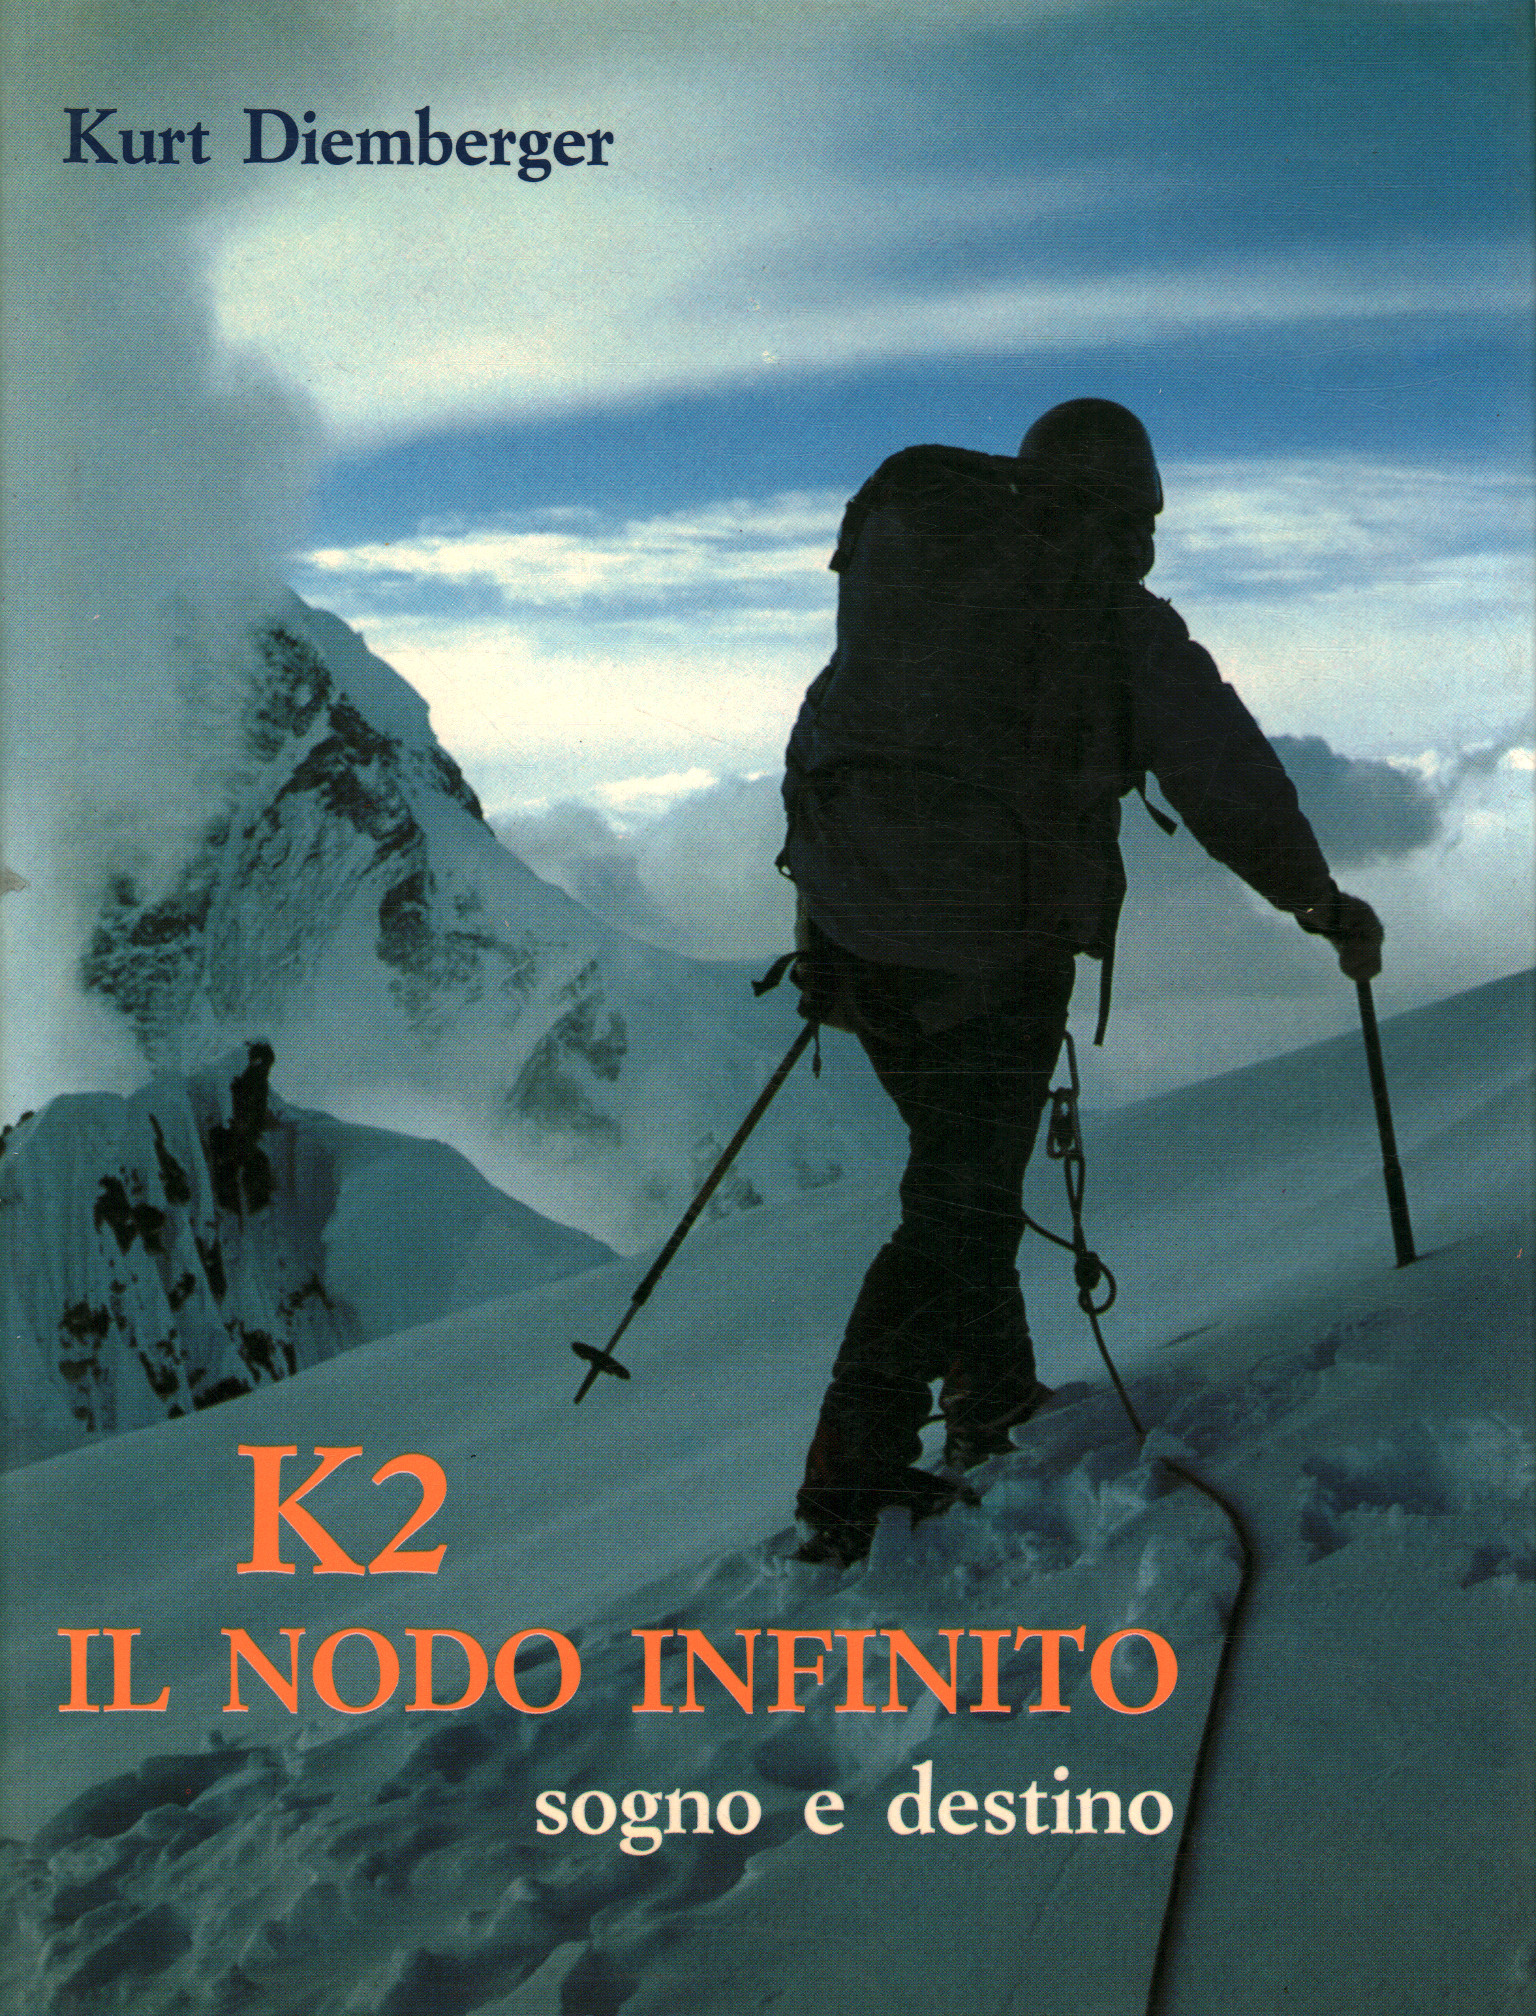 K2 el nudo infinito